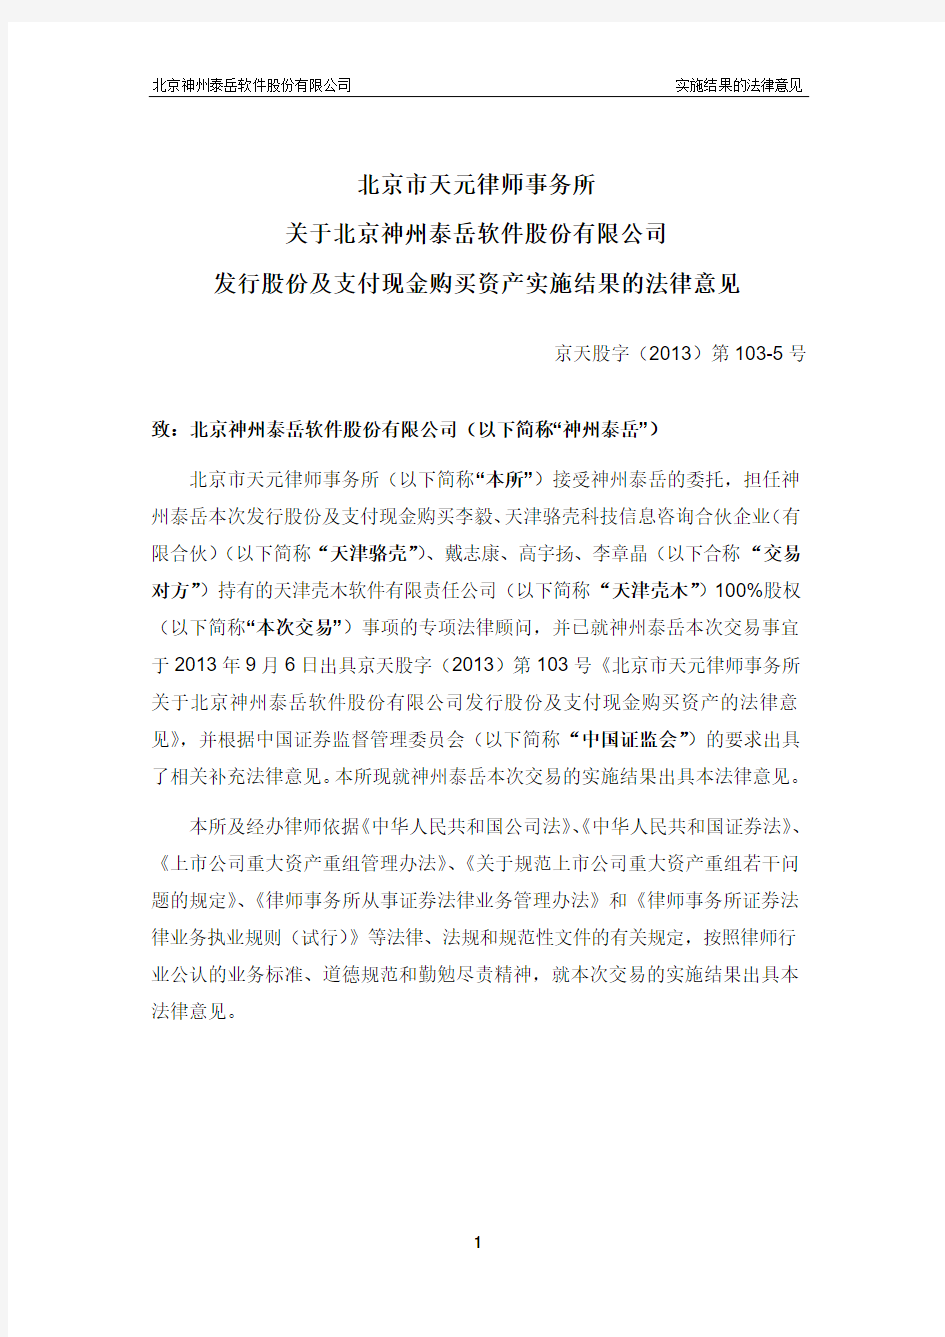 北京市天元律师事务所 关于北京神州泰岳软件股份有限公司